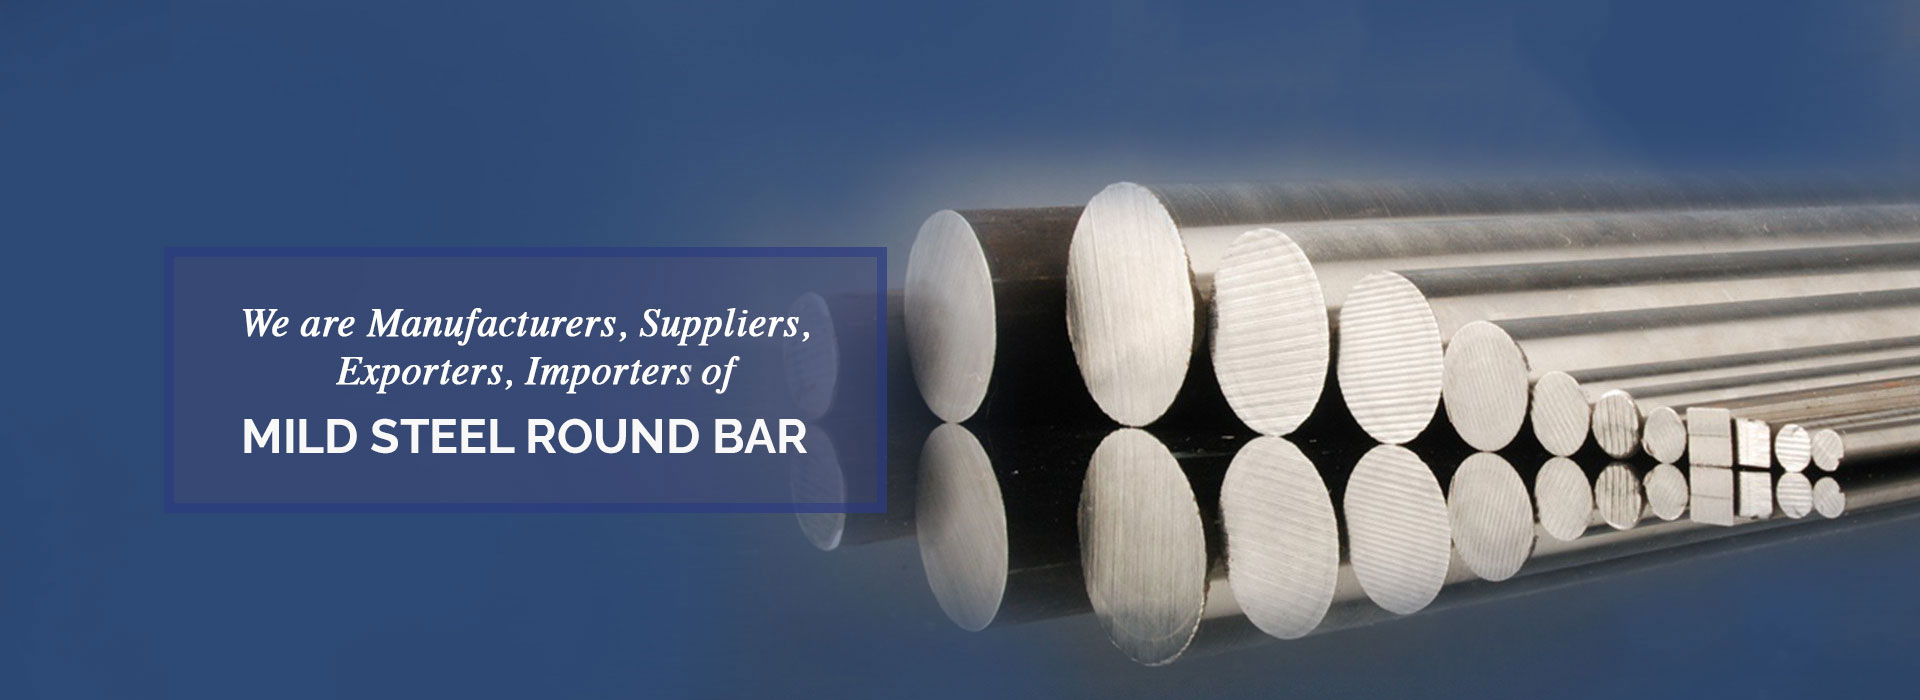 Mild Steel Round Bar Manufacturers in China